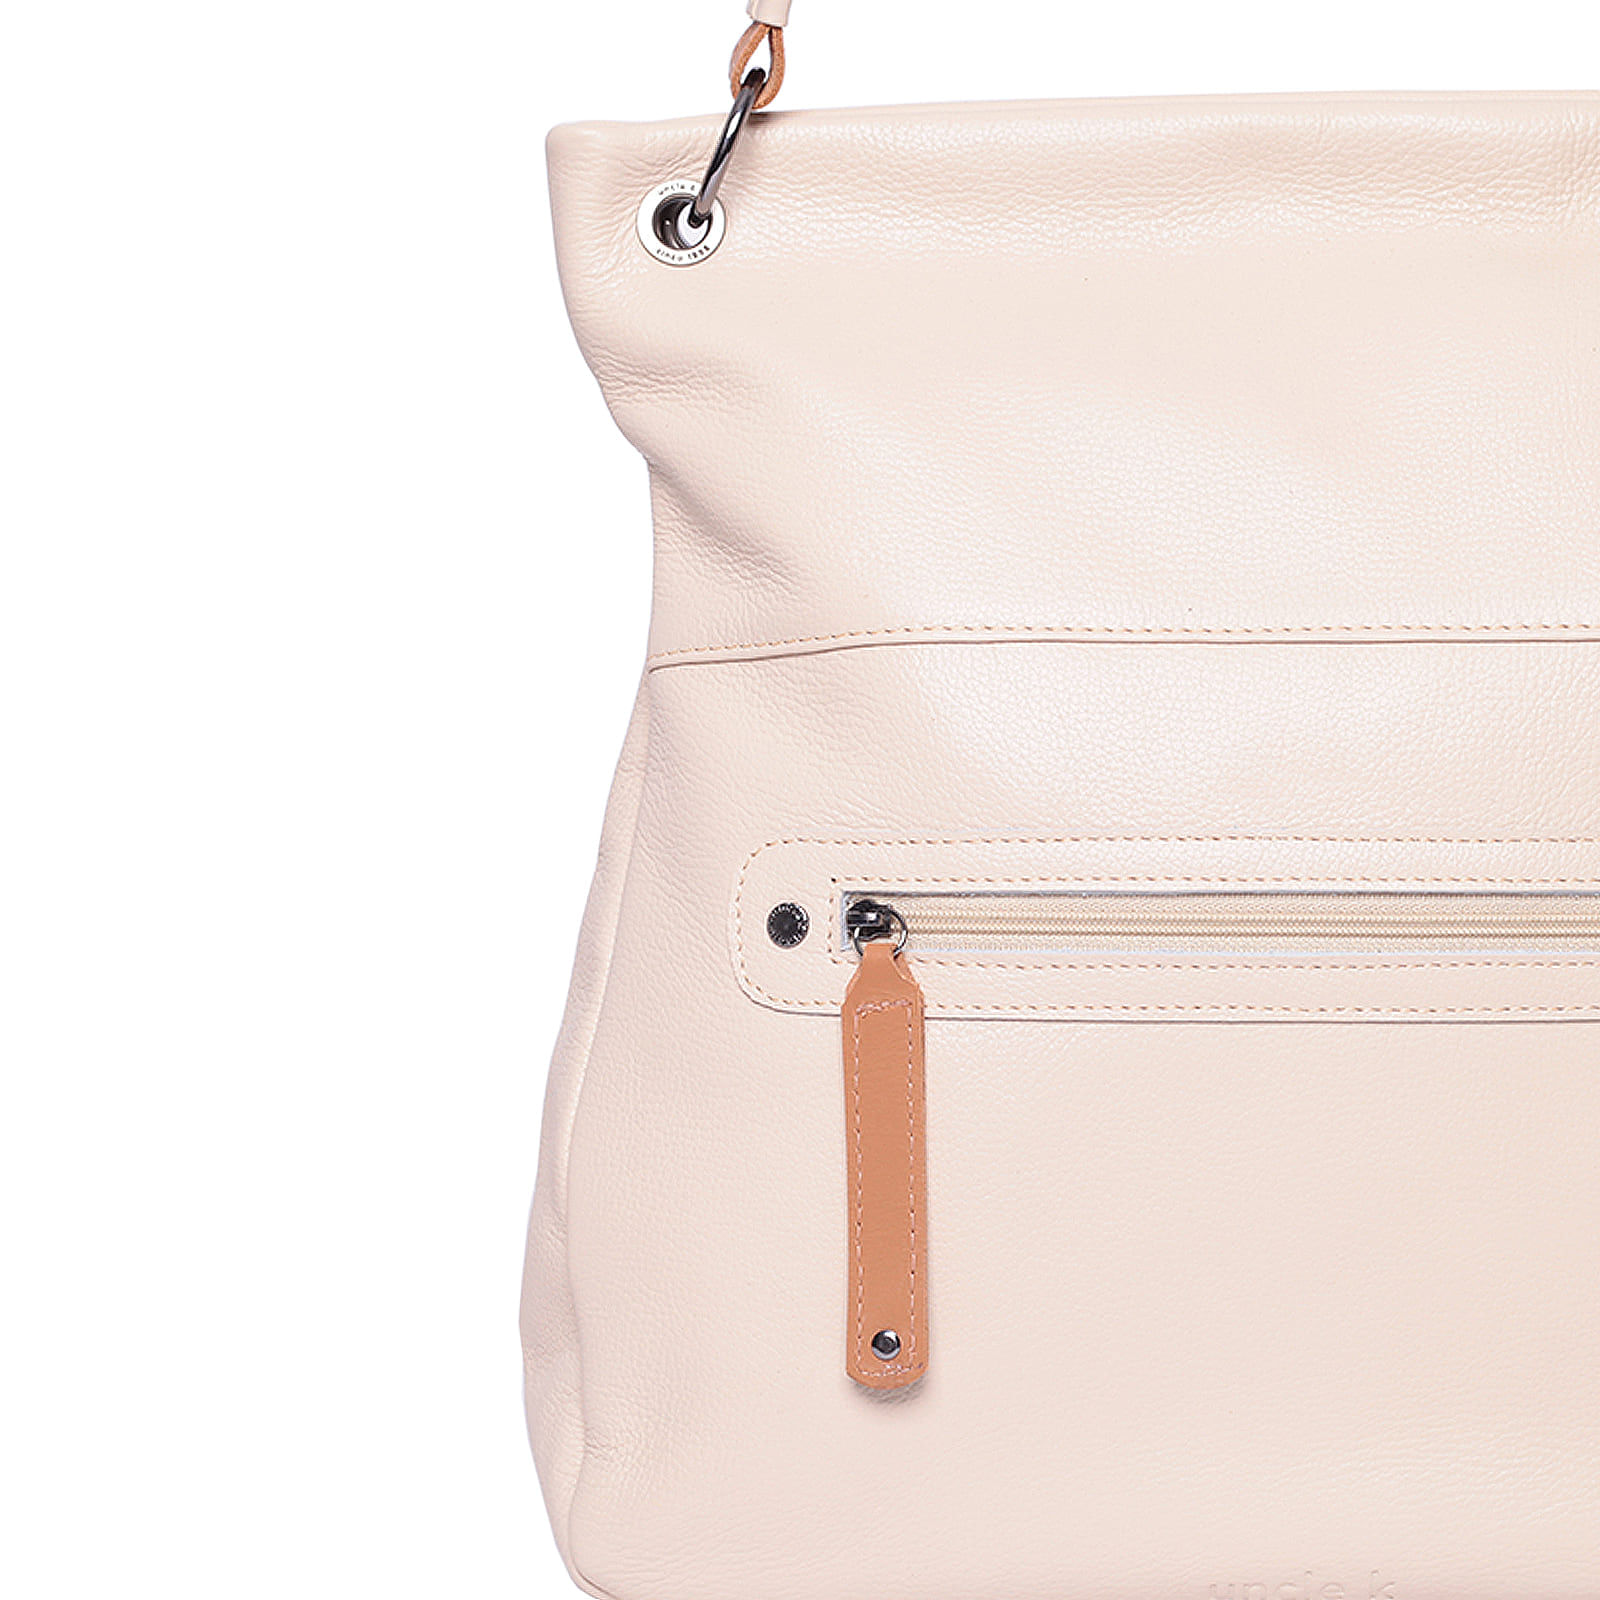 bolsa-shopping-bag-couro-61105-v24-off-white-3